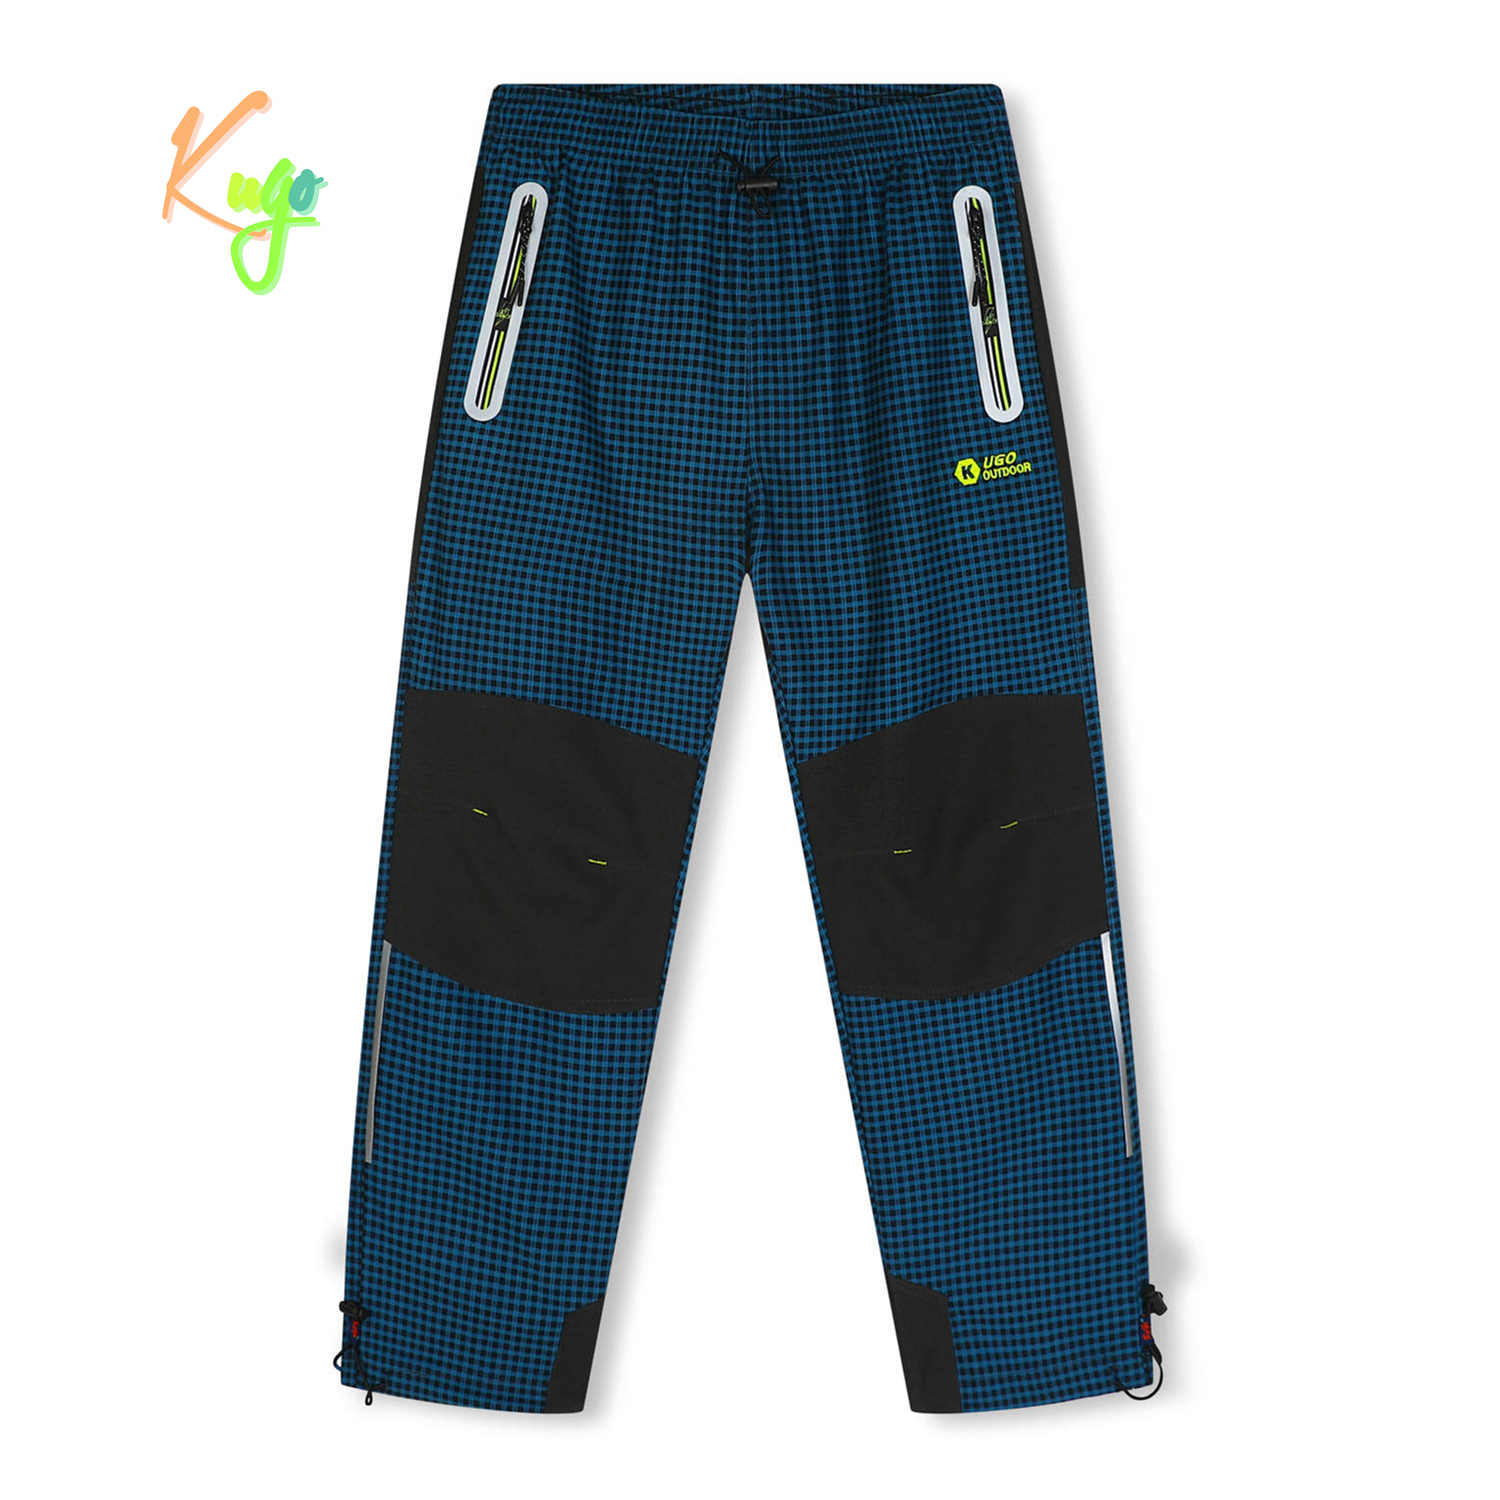 Chlapecké outdoorové kalhoty - KUGO G9658, petrol / signální zipy Barva: Petrol, Velikost: 140